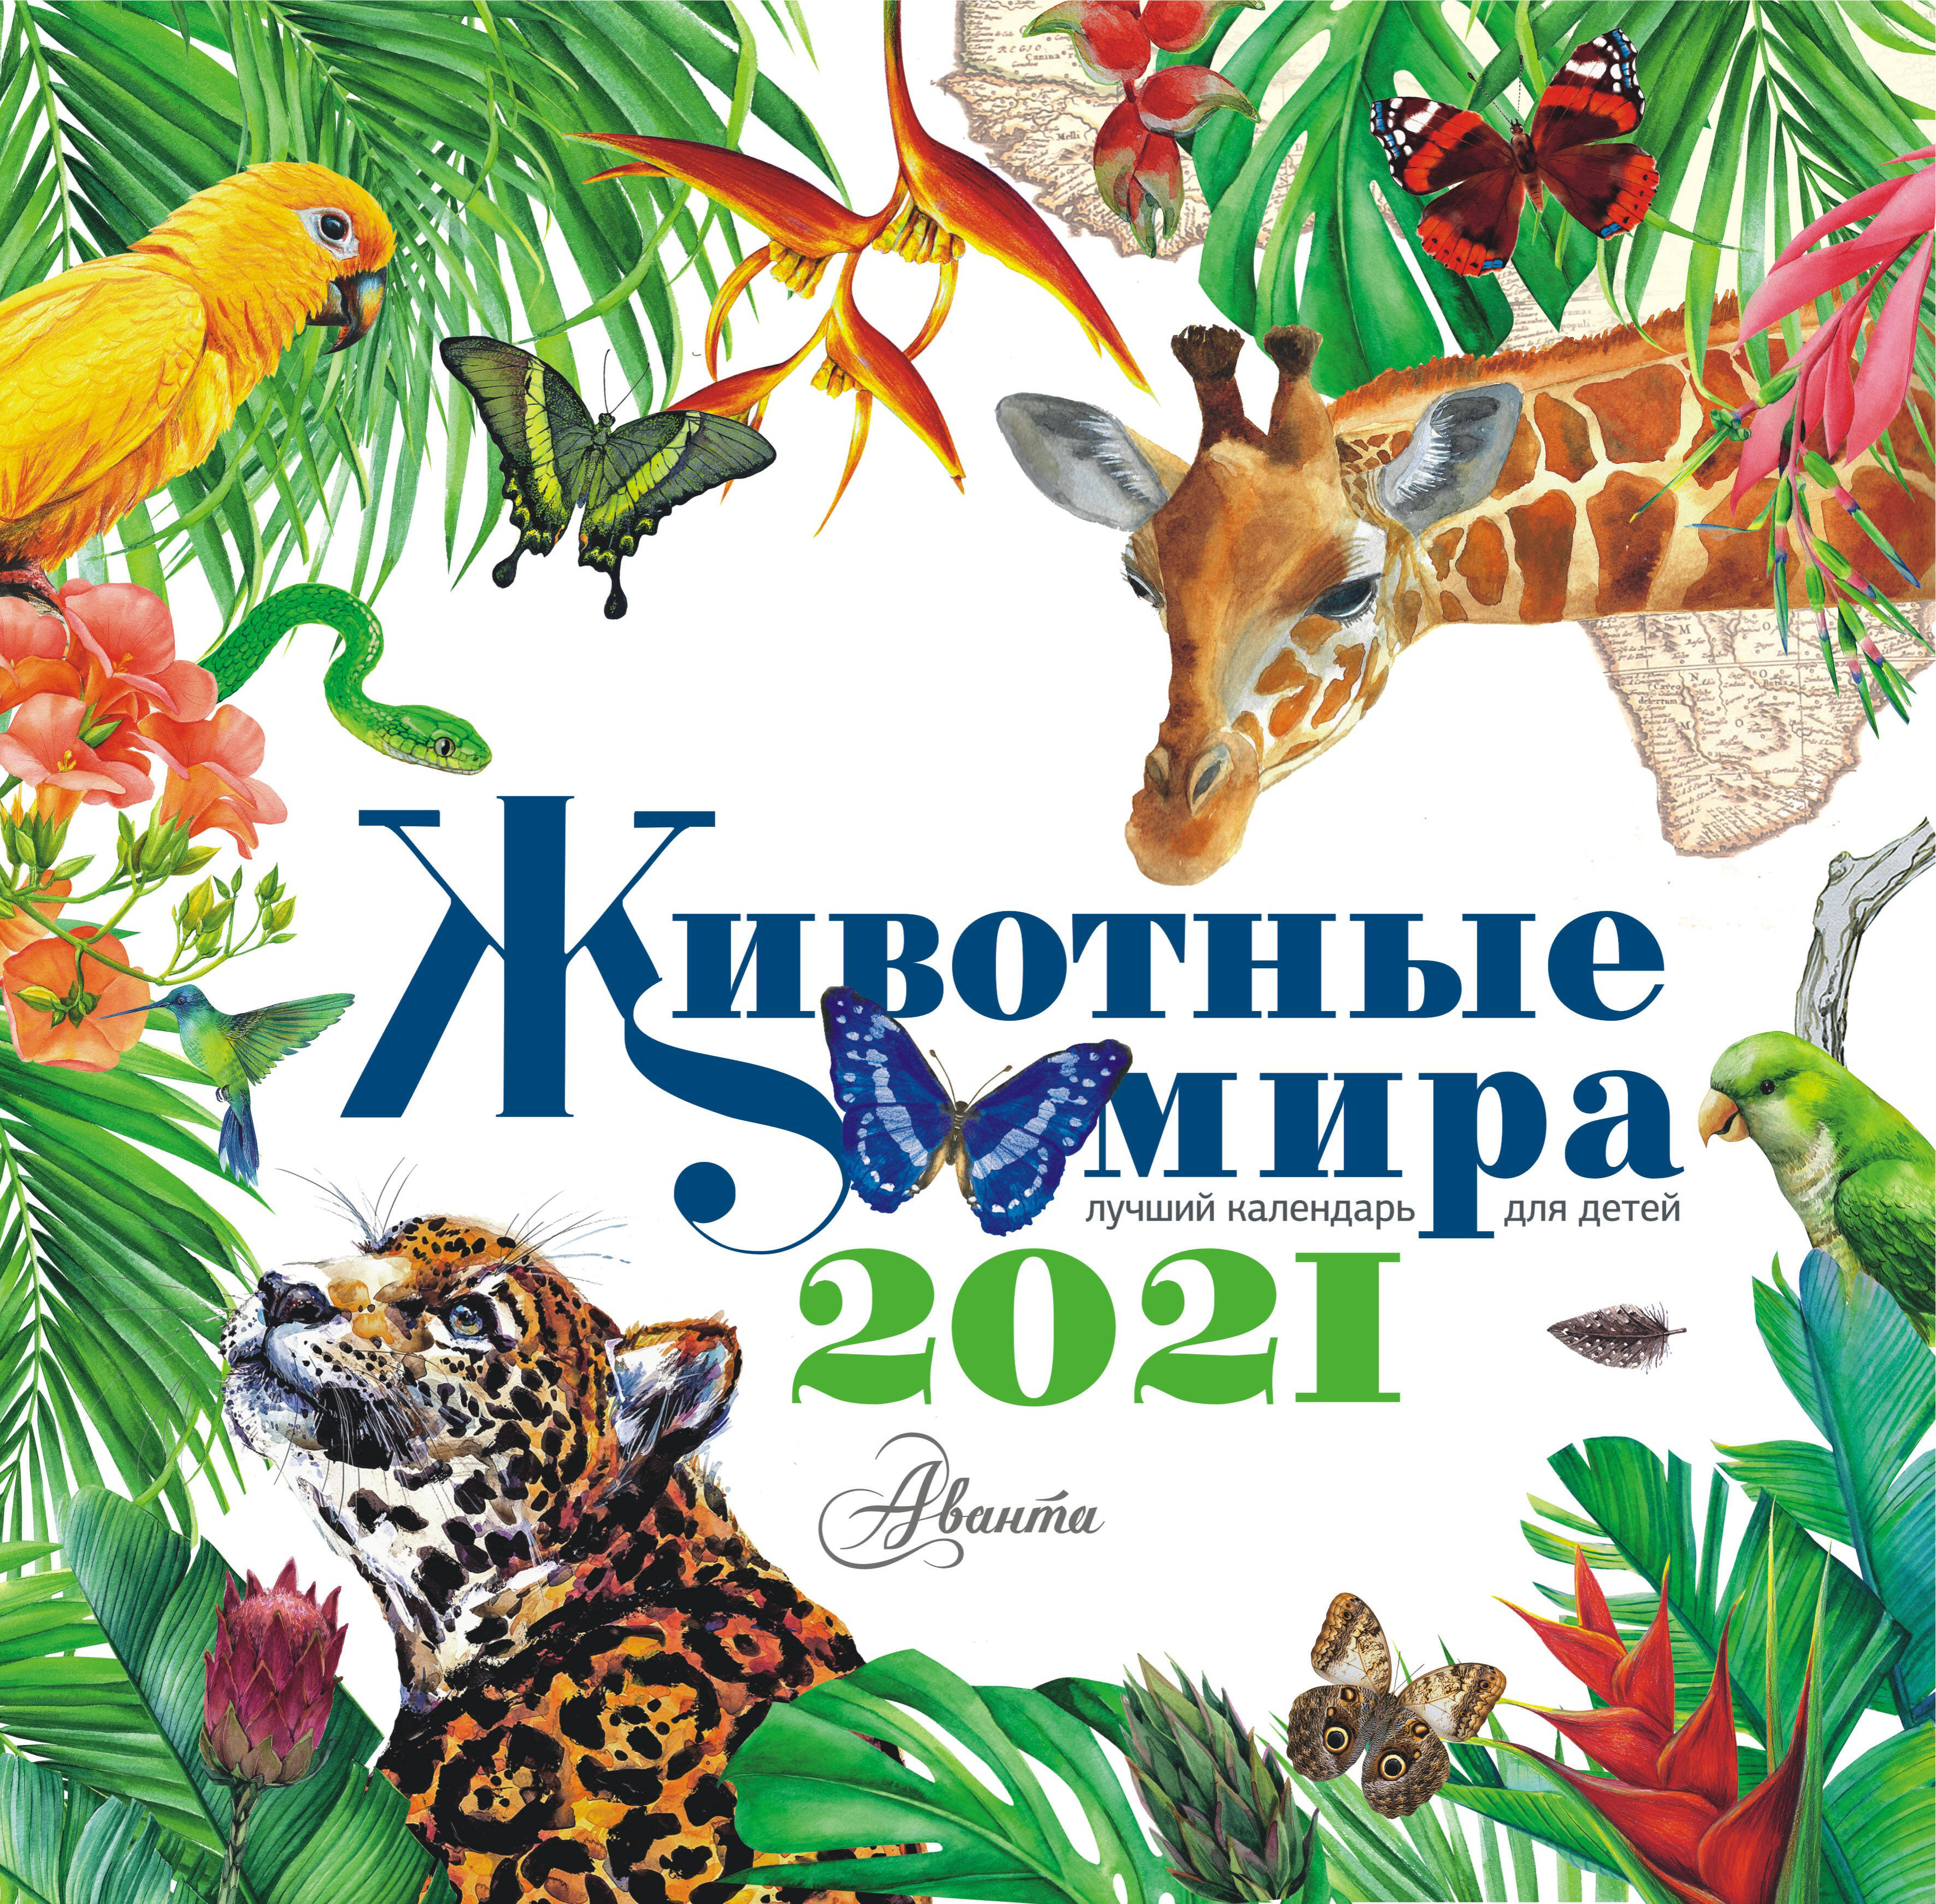  Календарь Животные мира 2021 - страница 0